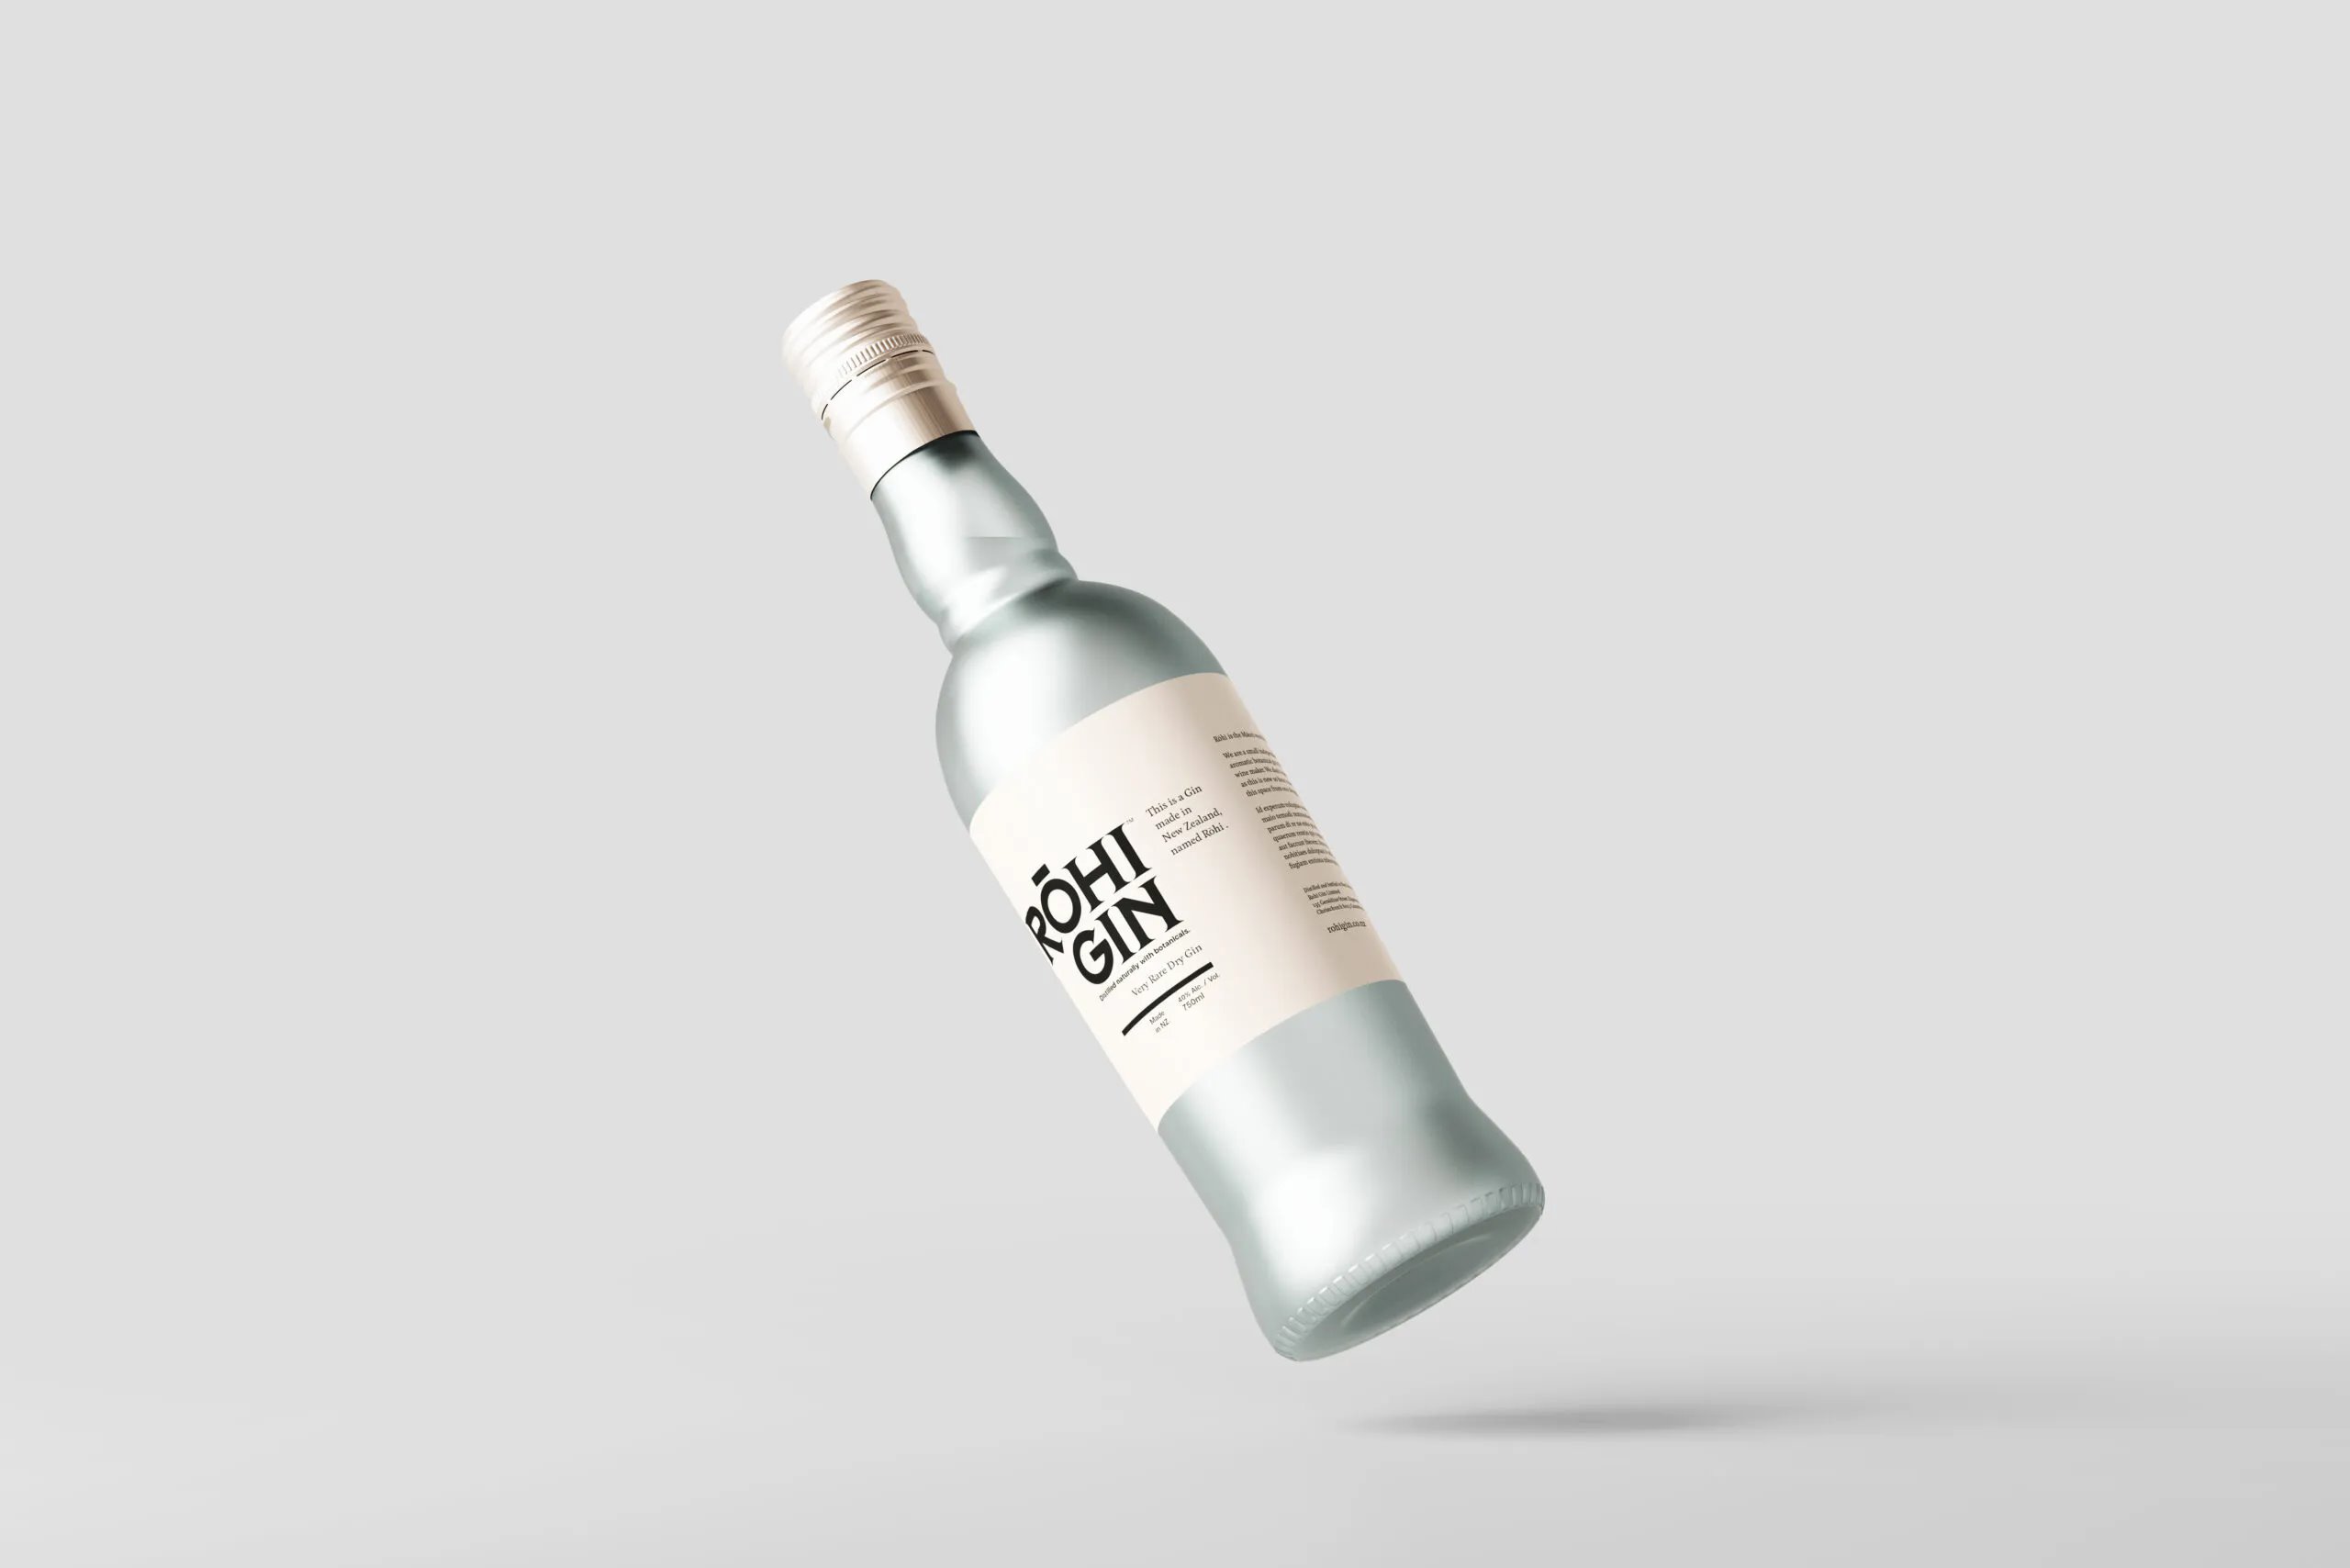 5 Mockups of Glass Spirit Liquor Bottle in Varied Views FREE PSD